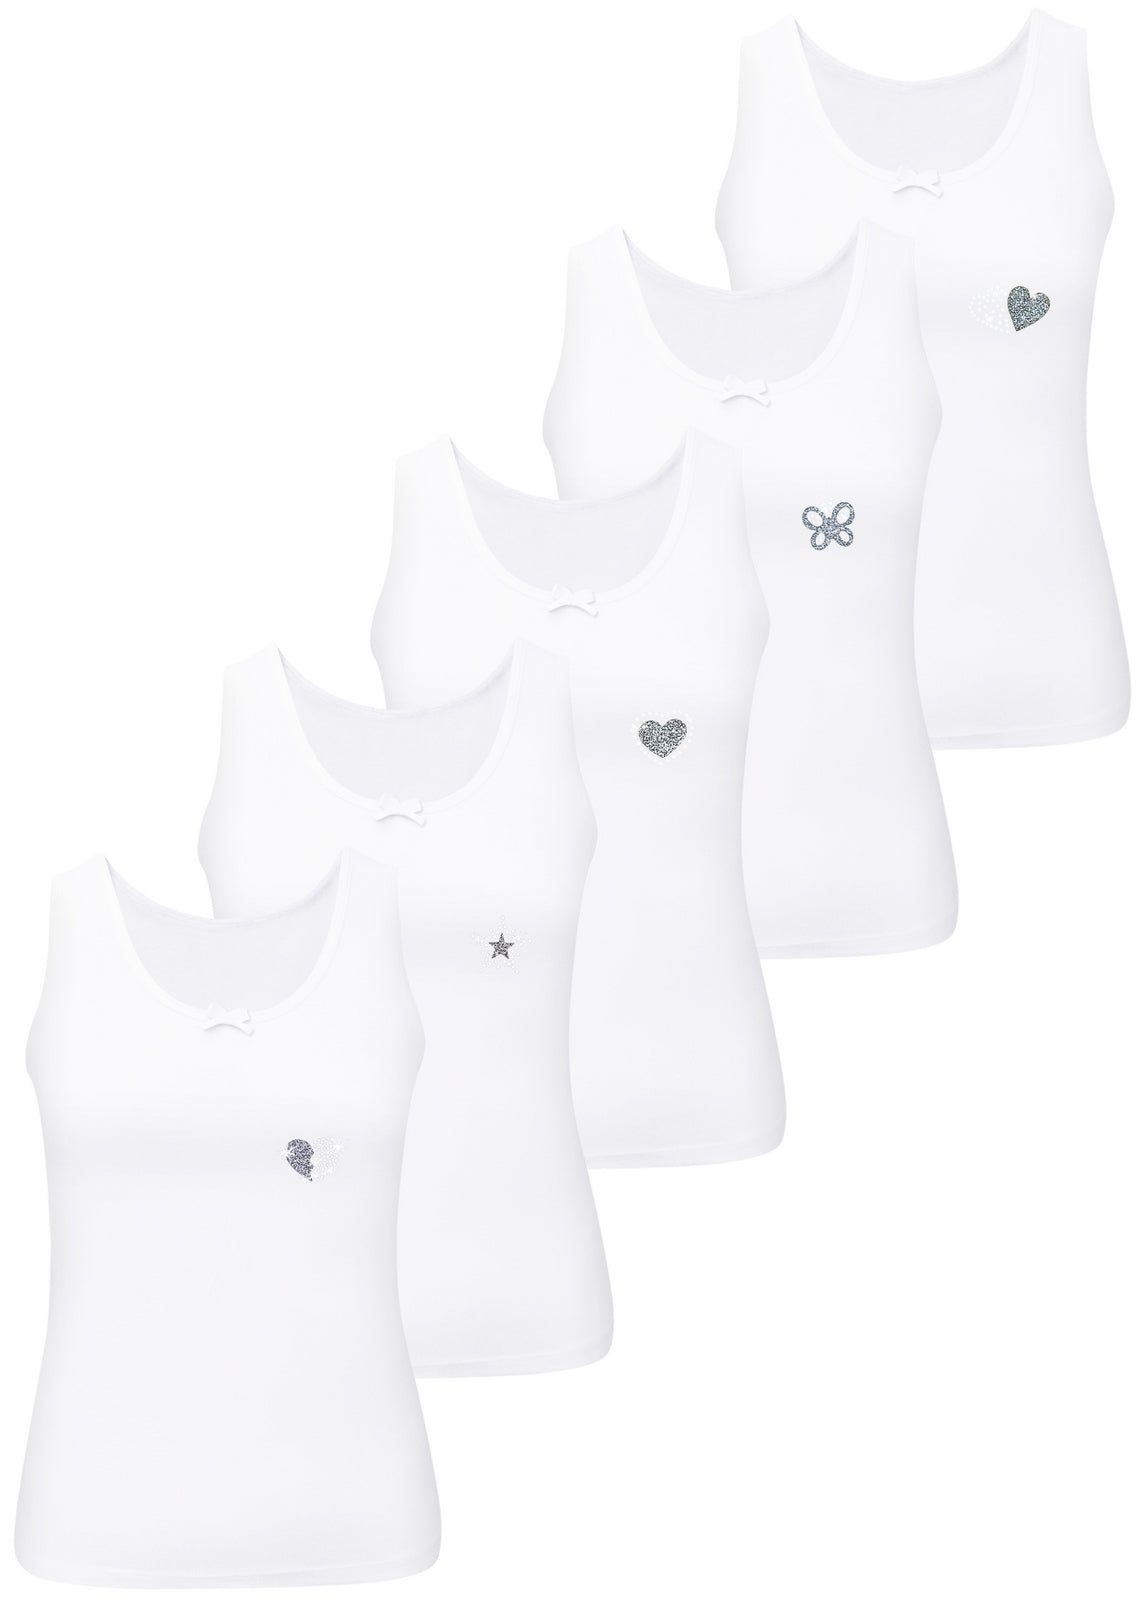 5 Mädchen Weiss Unterhemden Baumwolle Strass